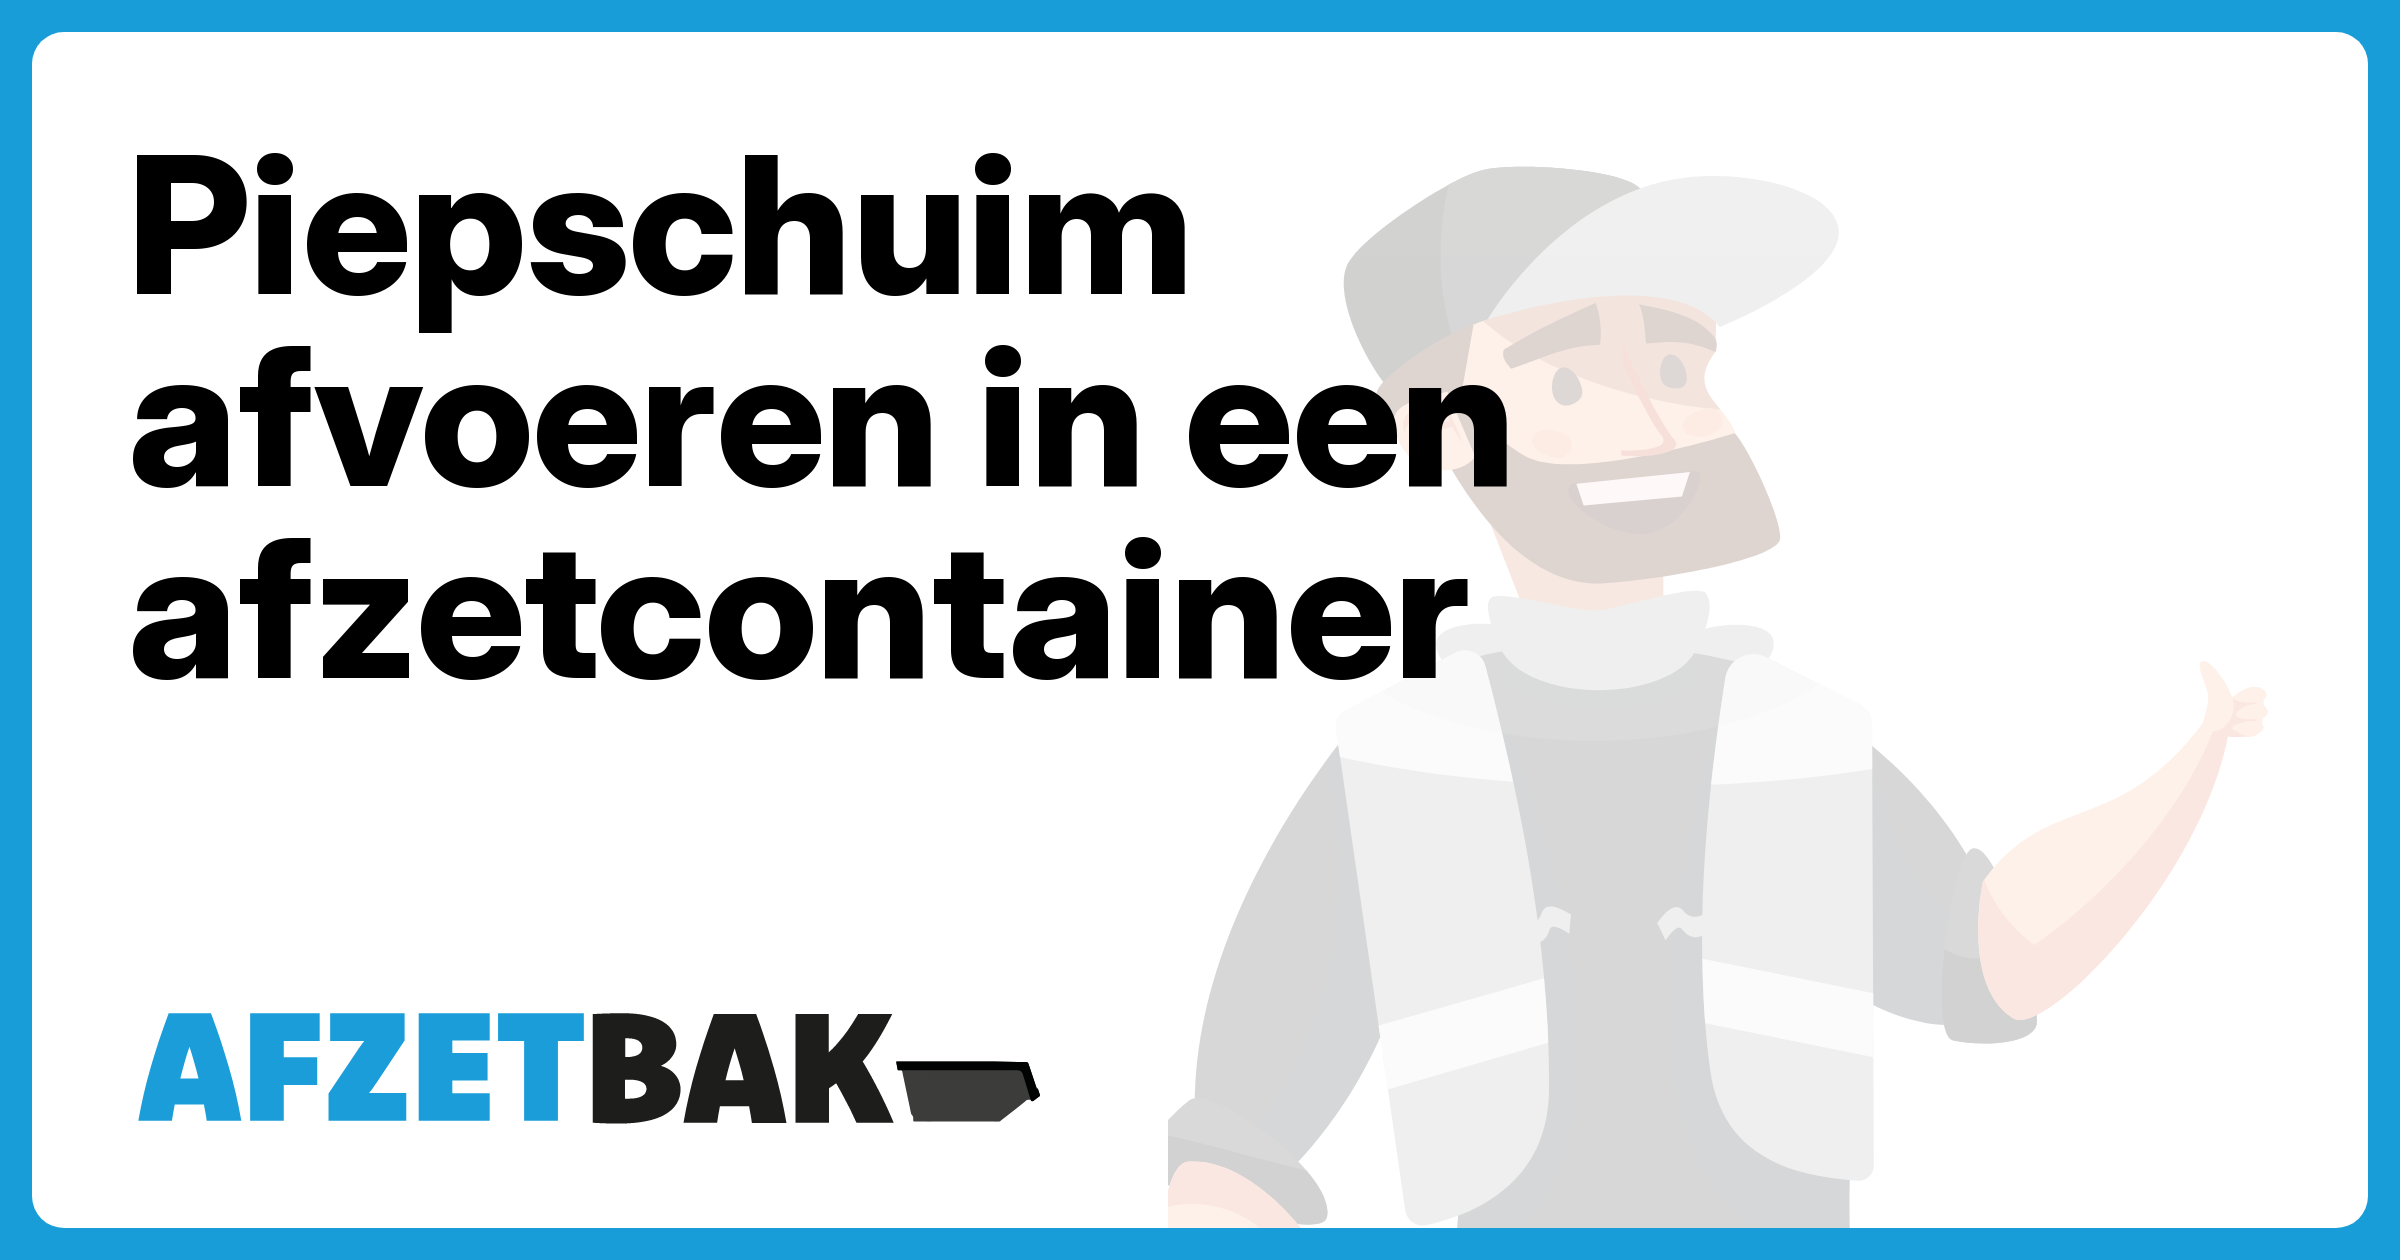 Piepschuim afvoeren in een afzetcontainer - Afzetbak.nl